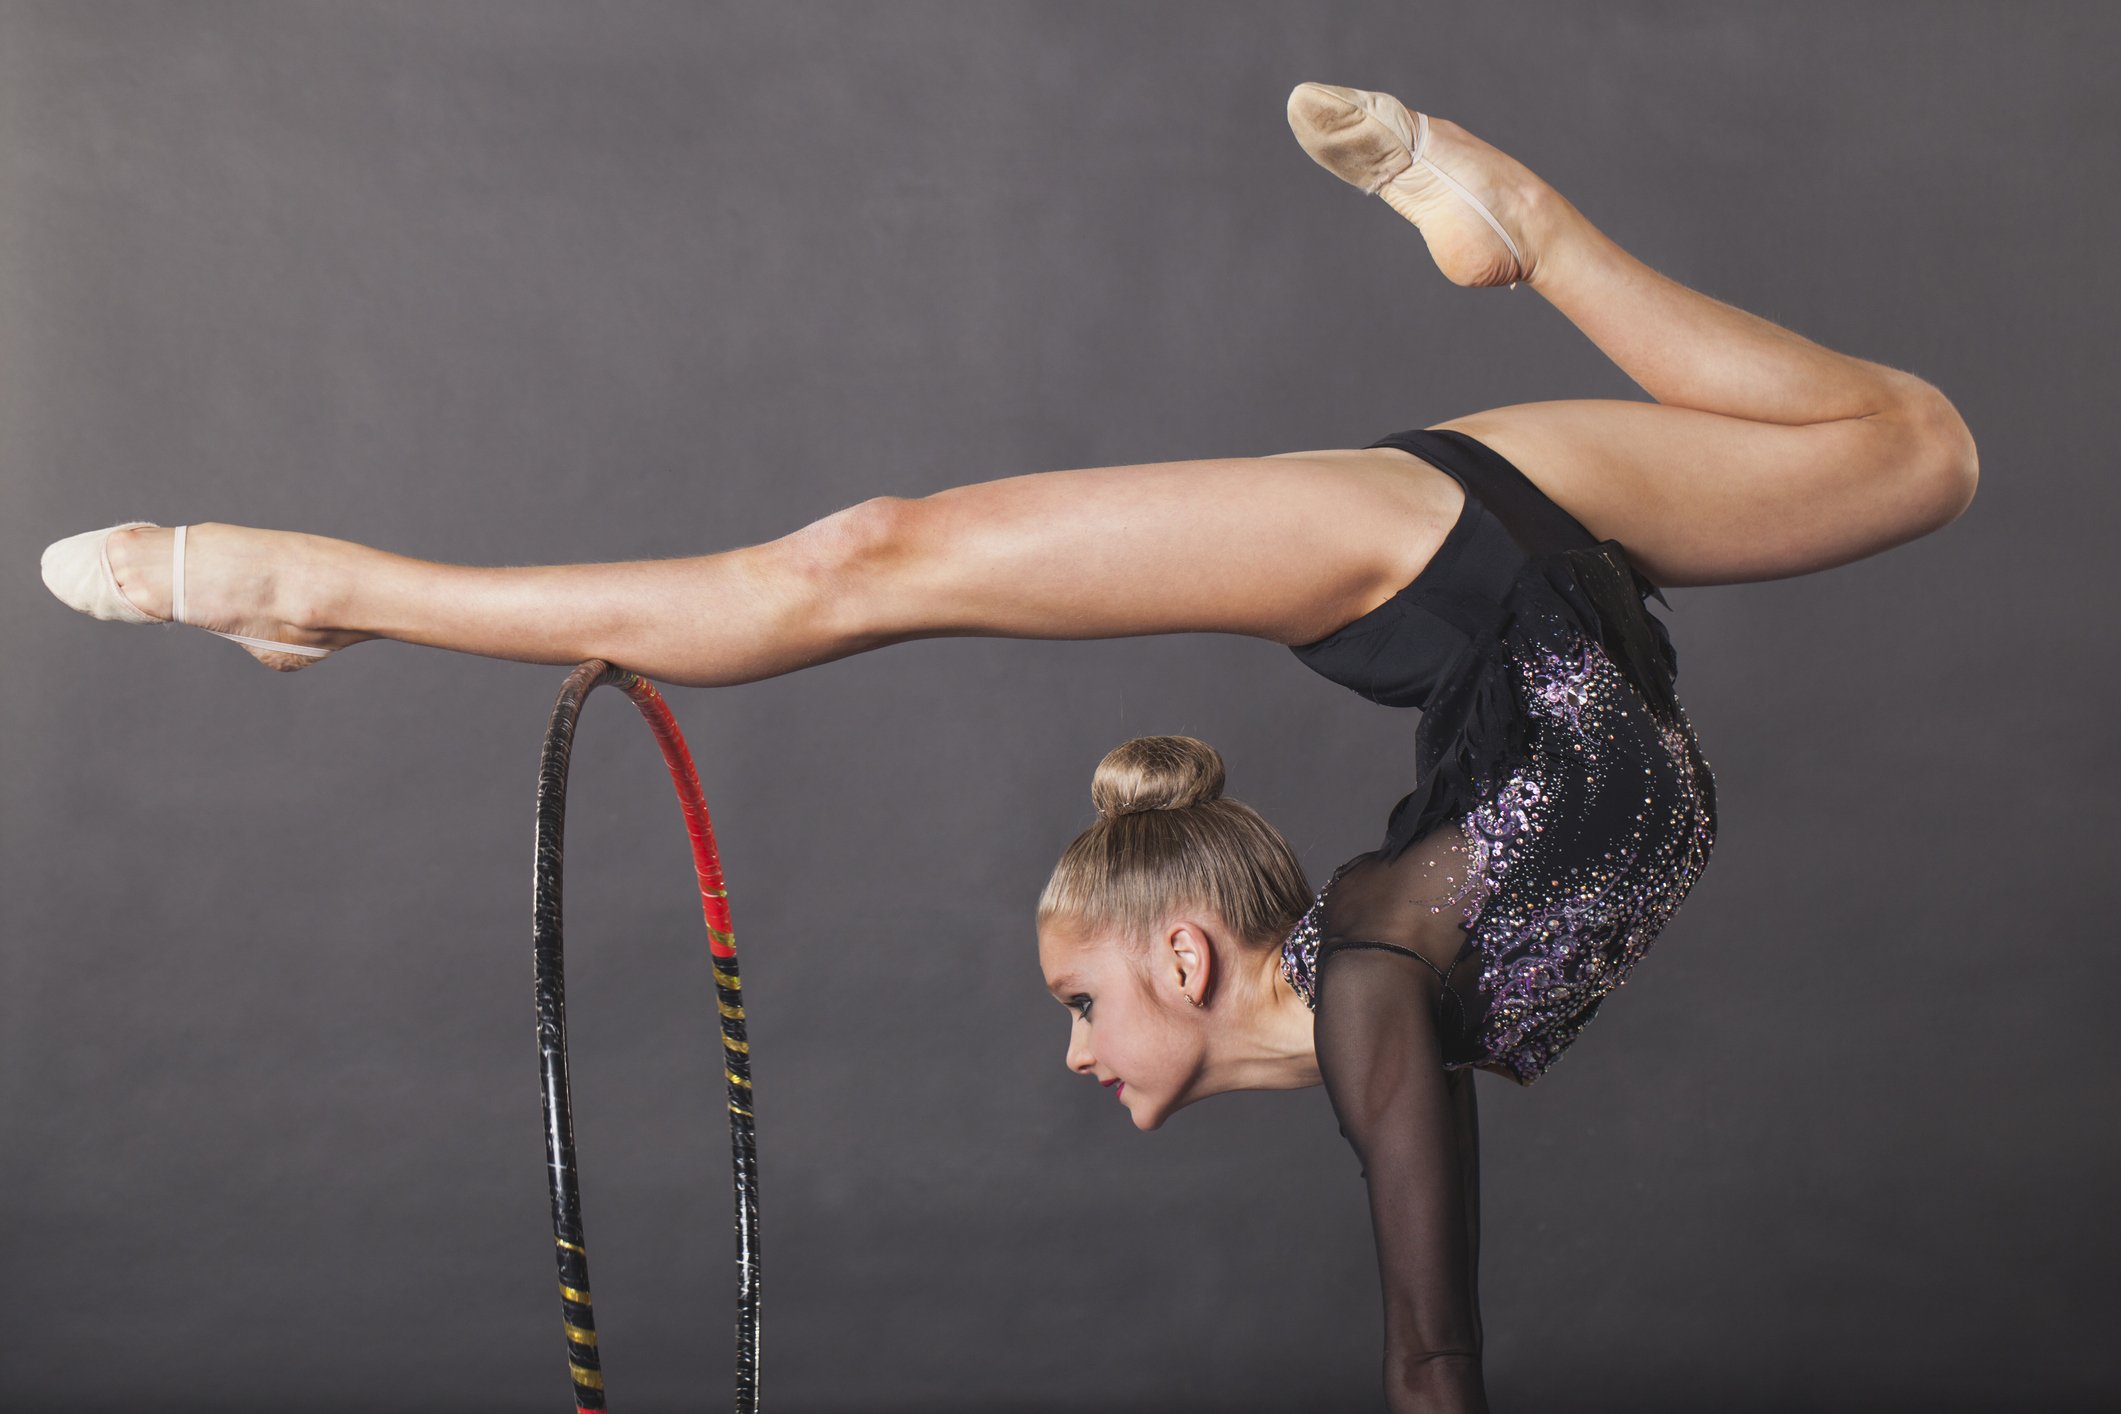 Meninas que querem ser atletas de ginástica artística podem fazer